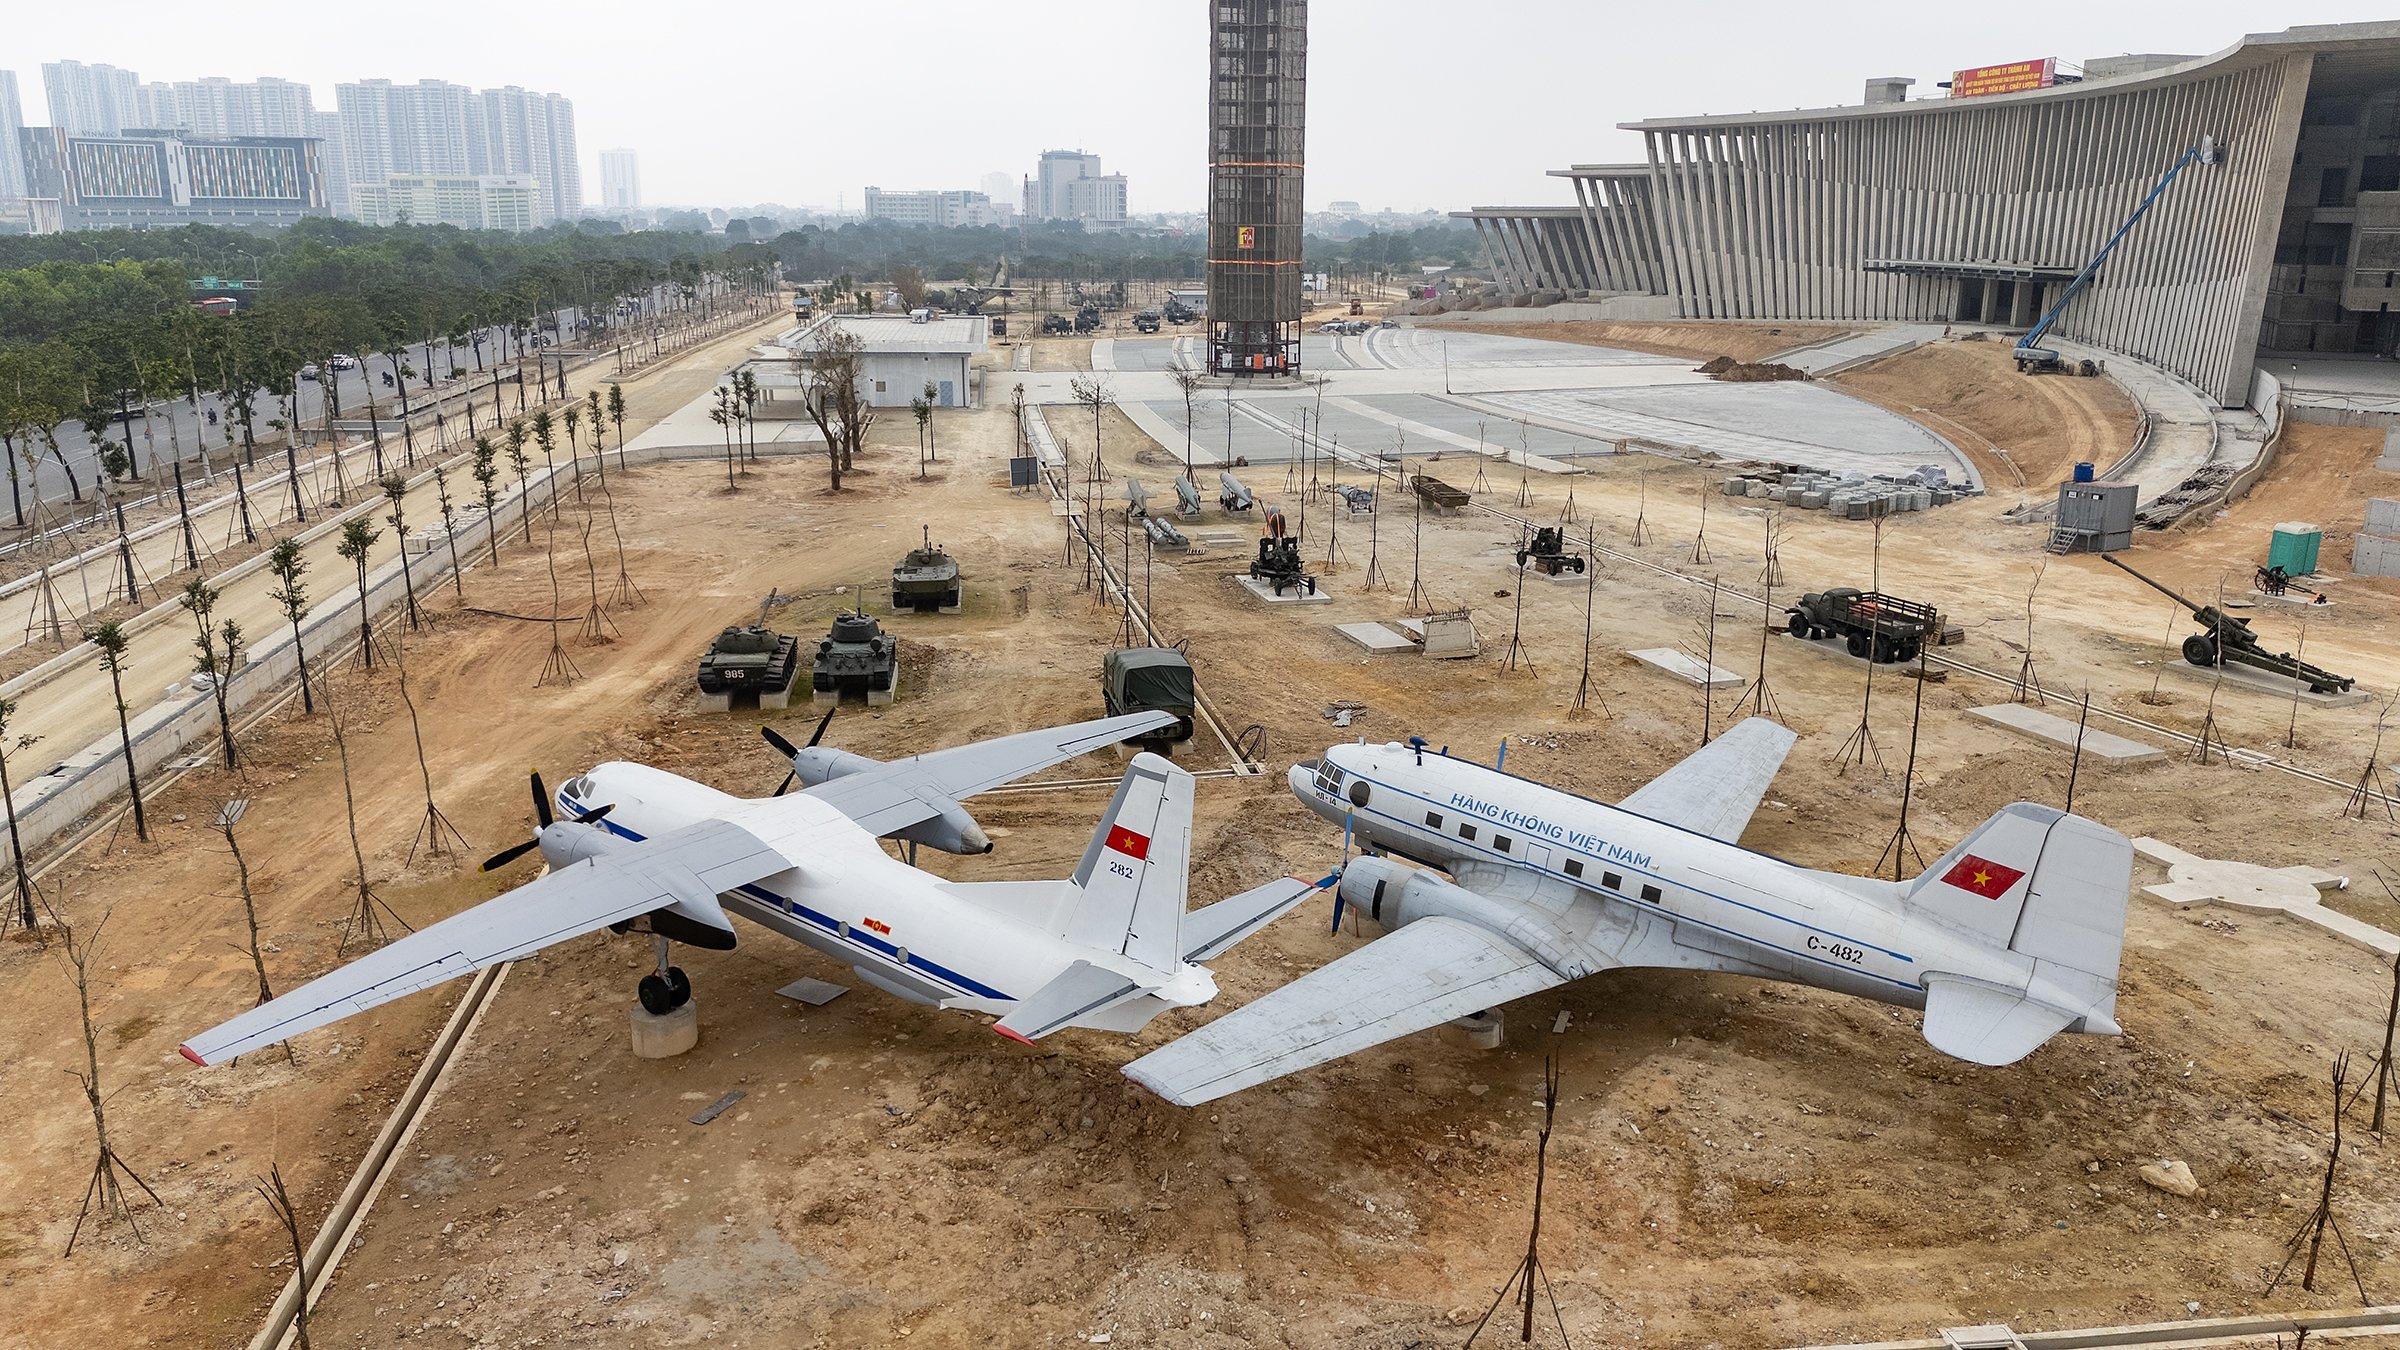 Máy bay C-130 nặng 34 tấn sắp ra mắt người dân Thủ đô: Nhìn tận mắt, sờ tận tay 